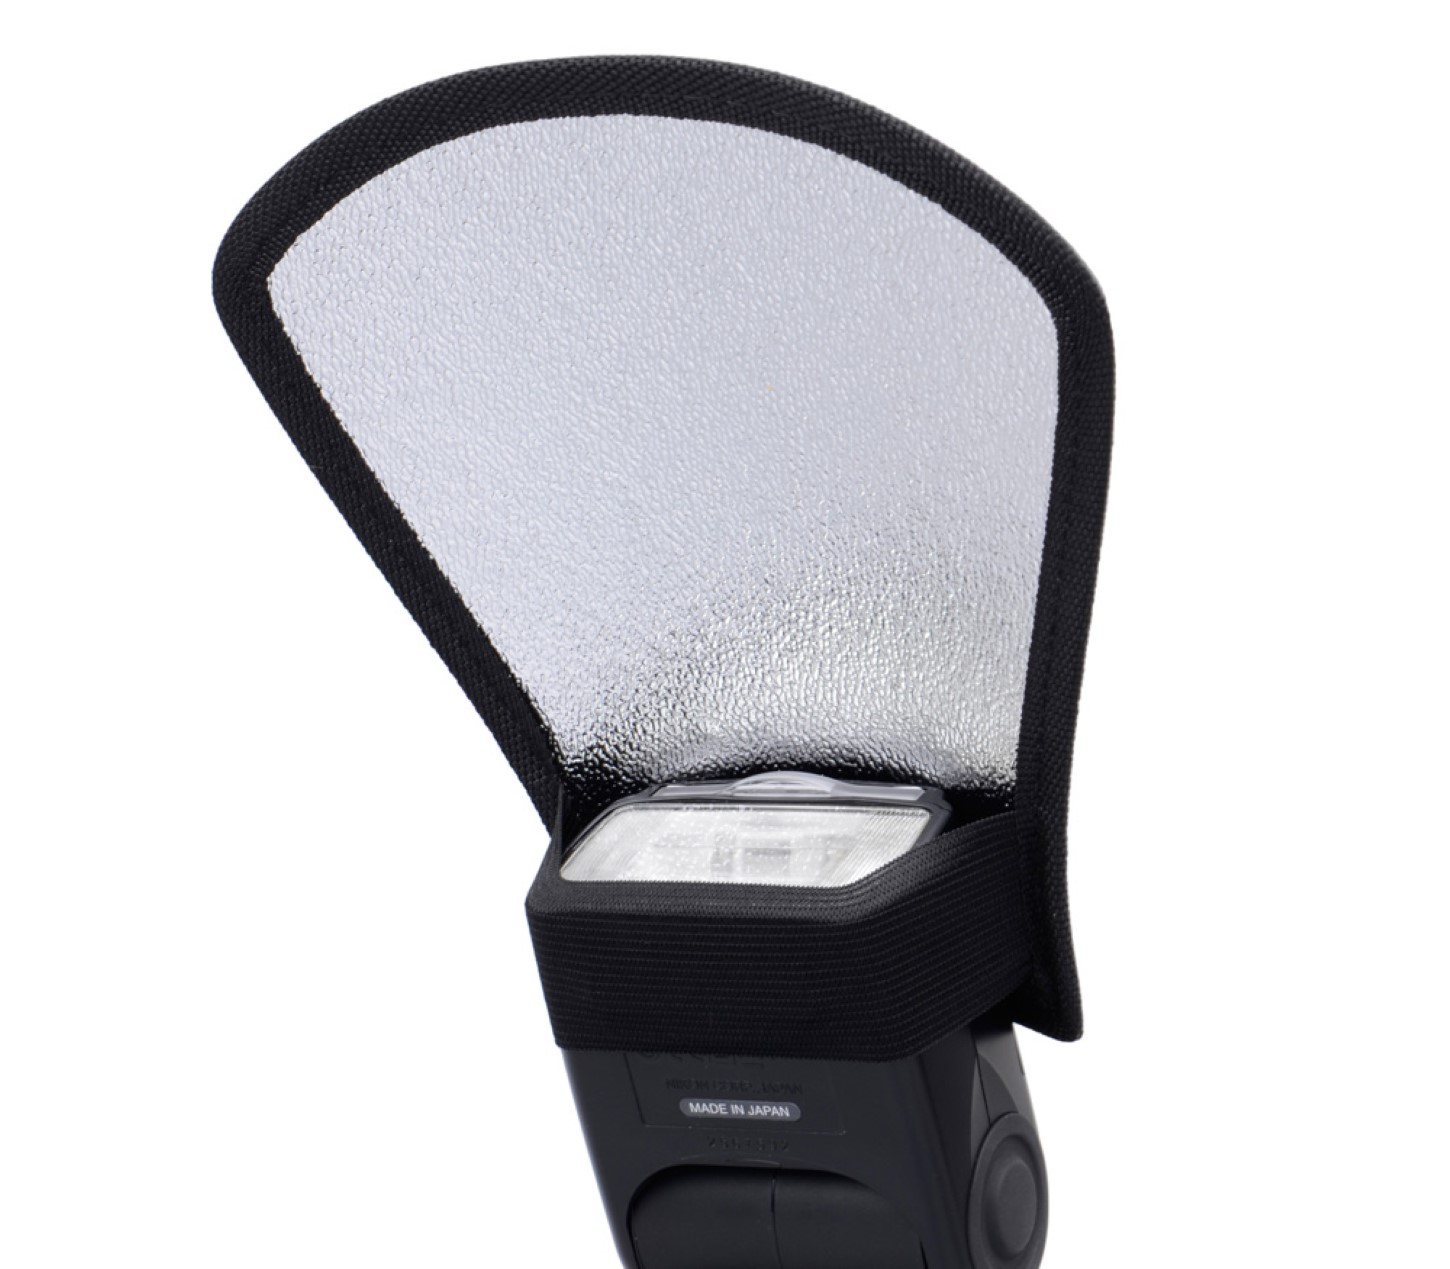 Universal Blitzdiffusor Reflektorkarte silber-weiß für Aufsteckblitze